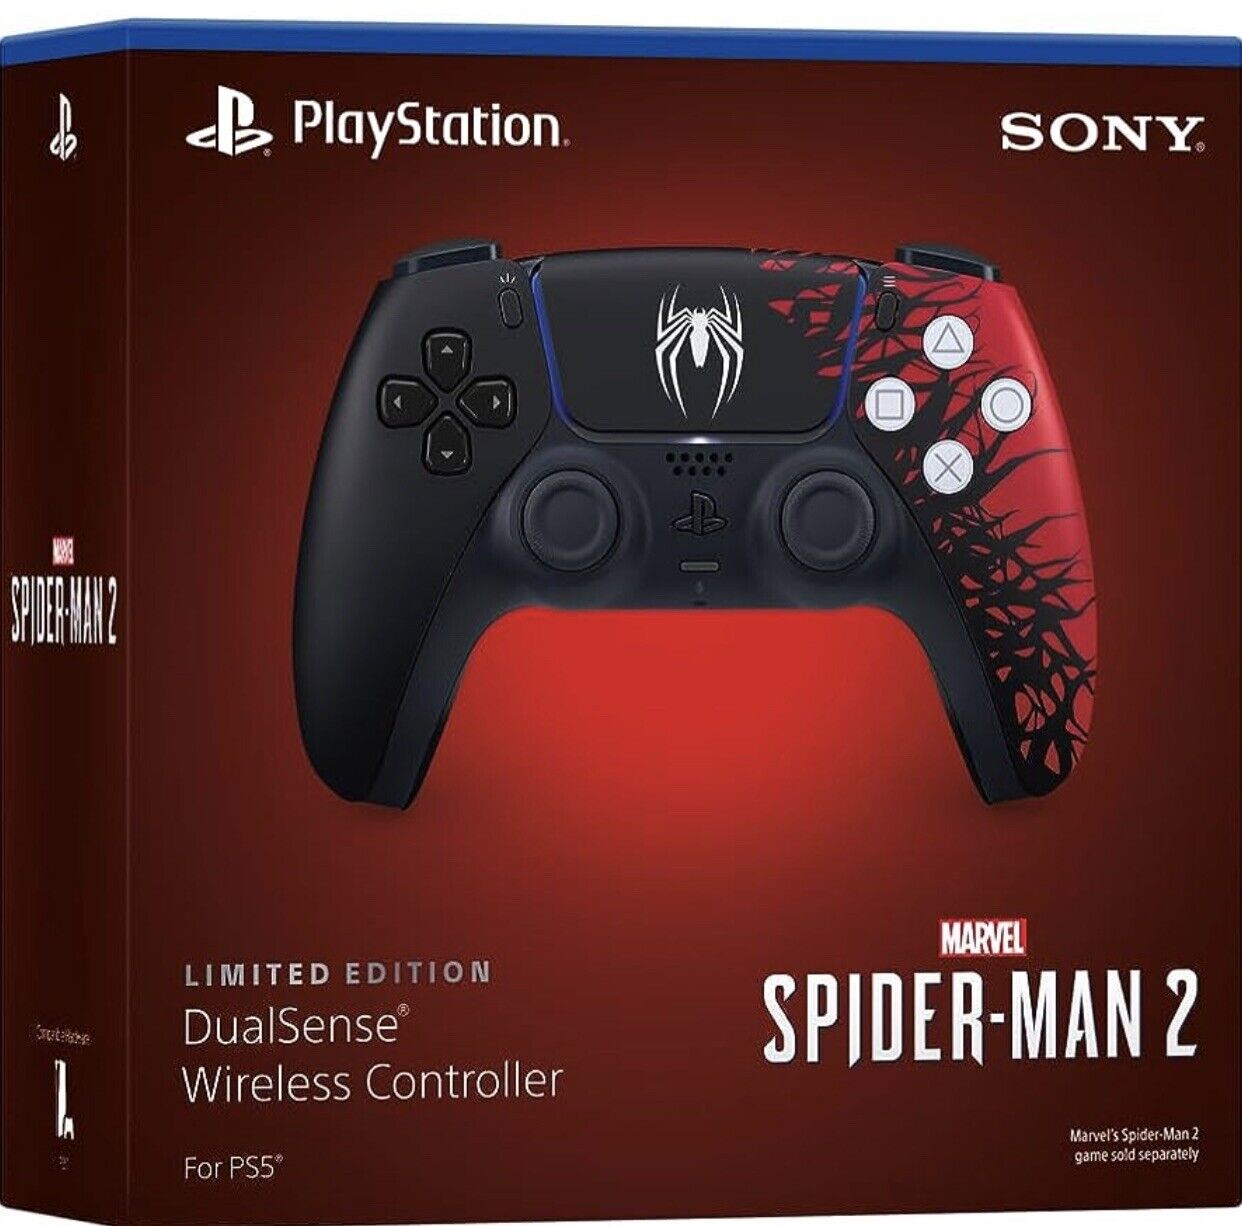 Sony PlayStation 5 (PS5) DualSense vezeték nélküli kontroller Spider-Man 2 Limited Edition - PlayStation 5 Játékkonzol Kiegészítő